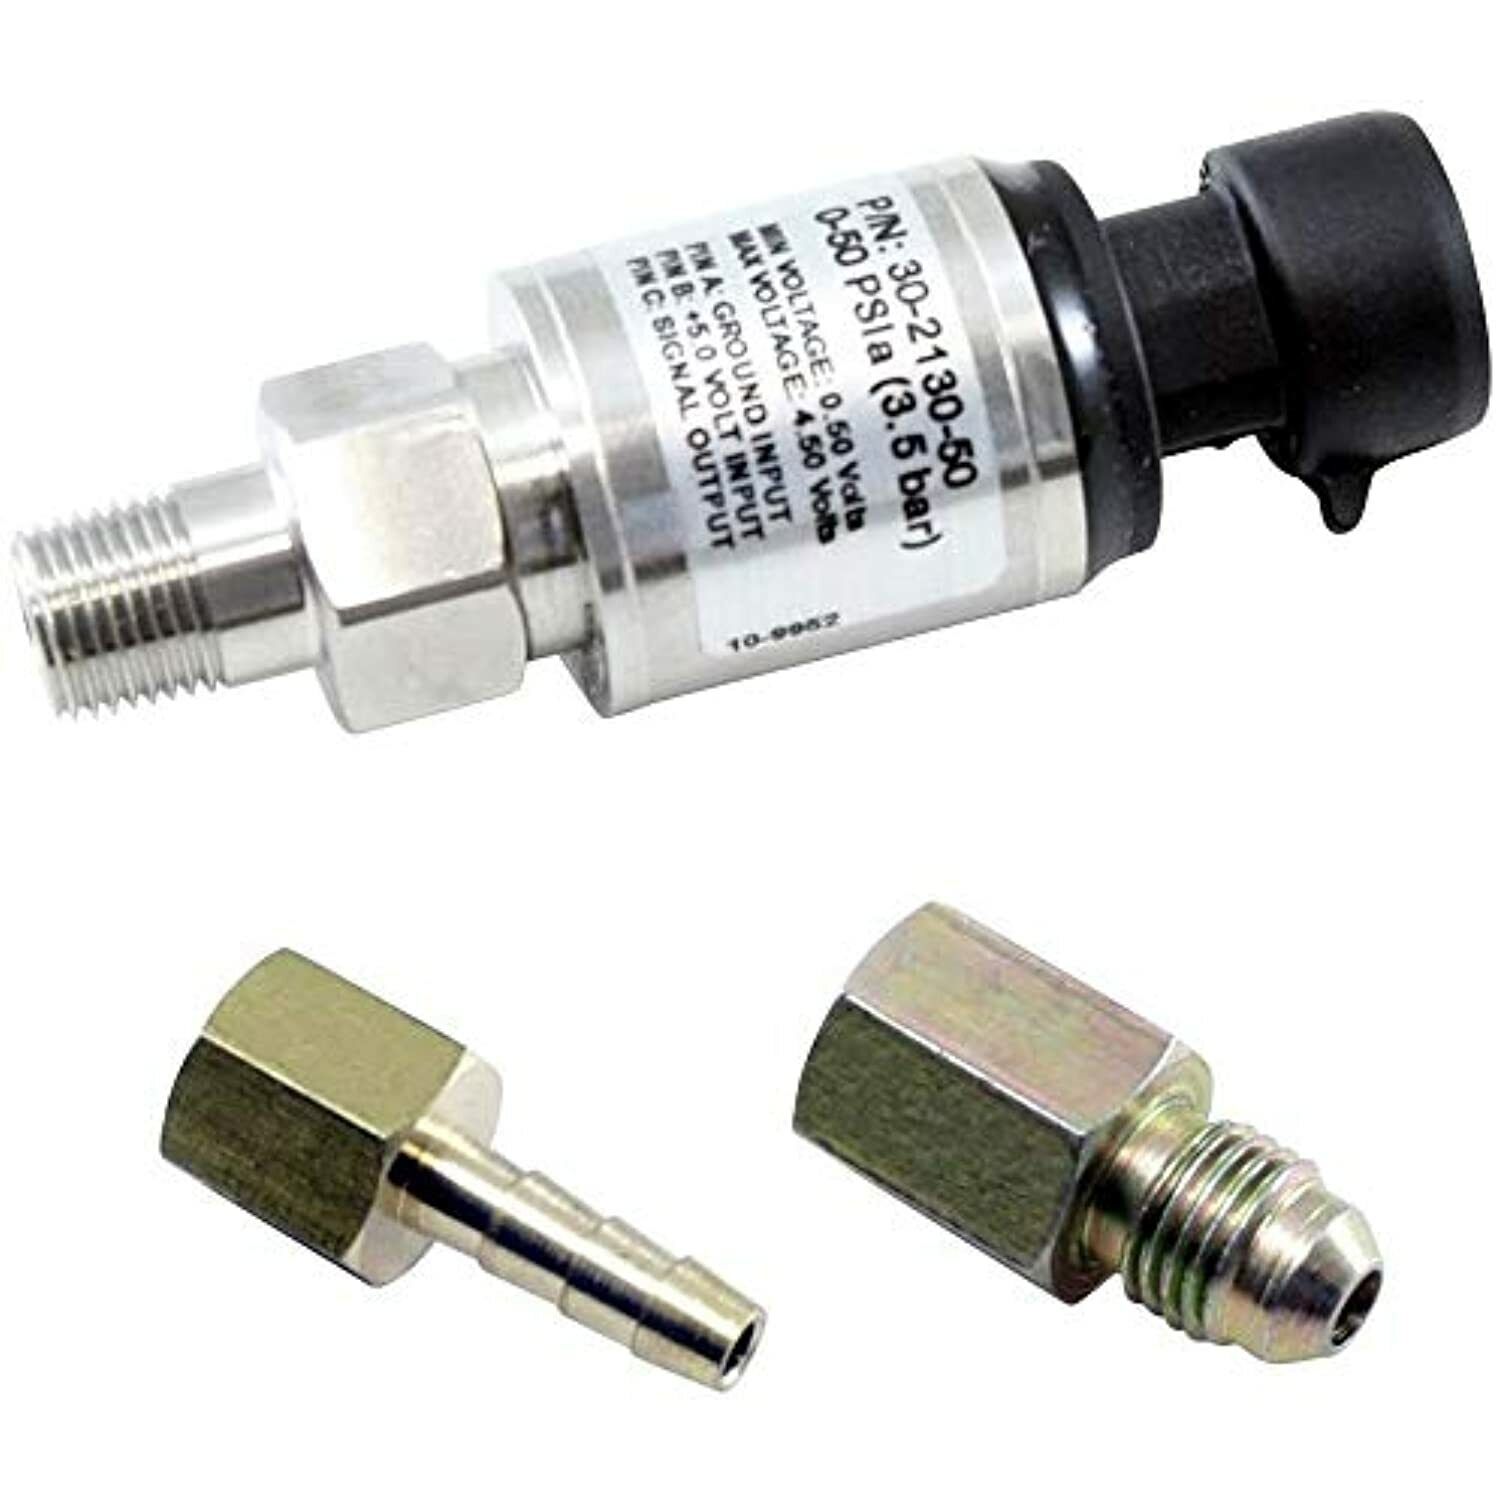 AEM 30-2130-50 50 PSIA or 3.5 Bar MAP Sensor Kit